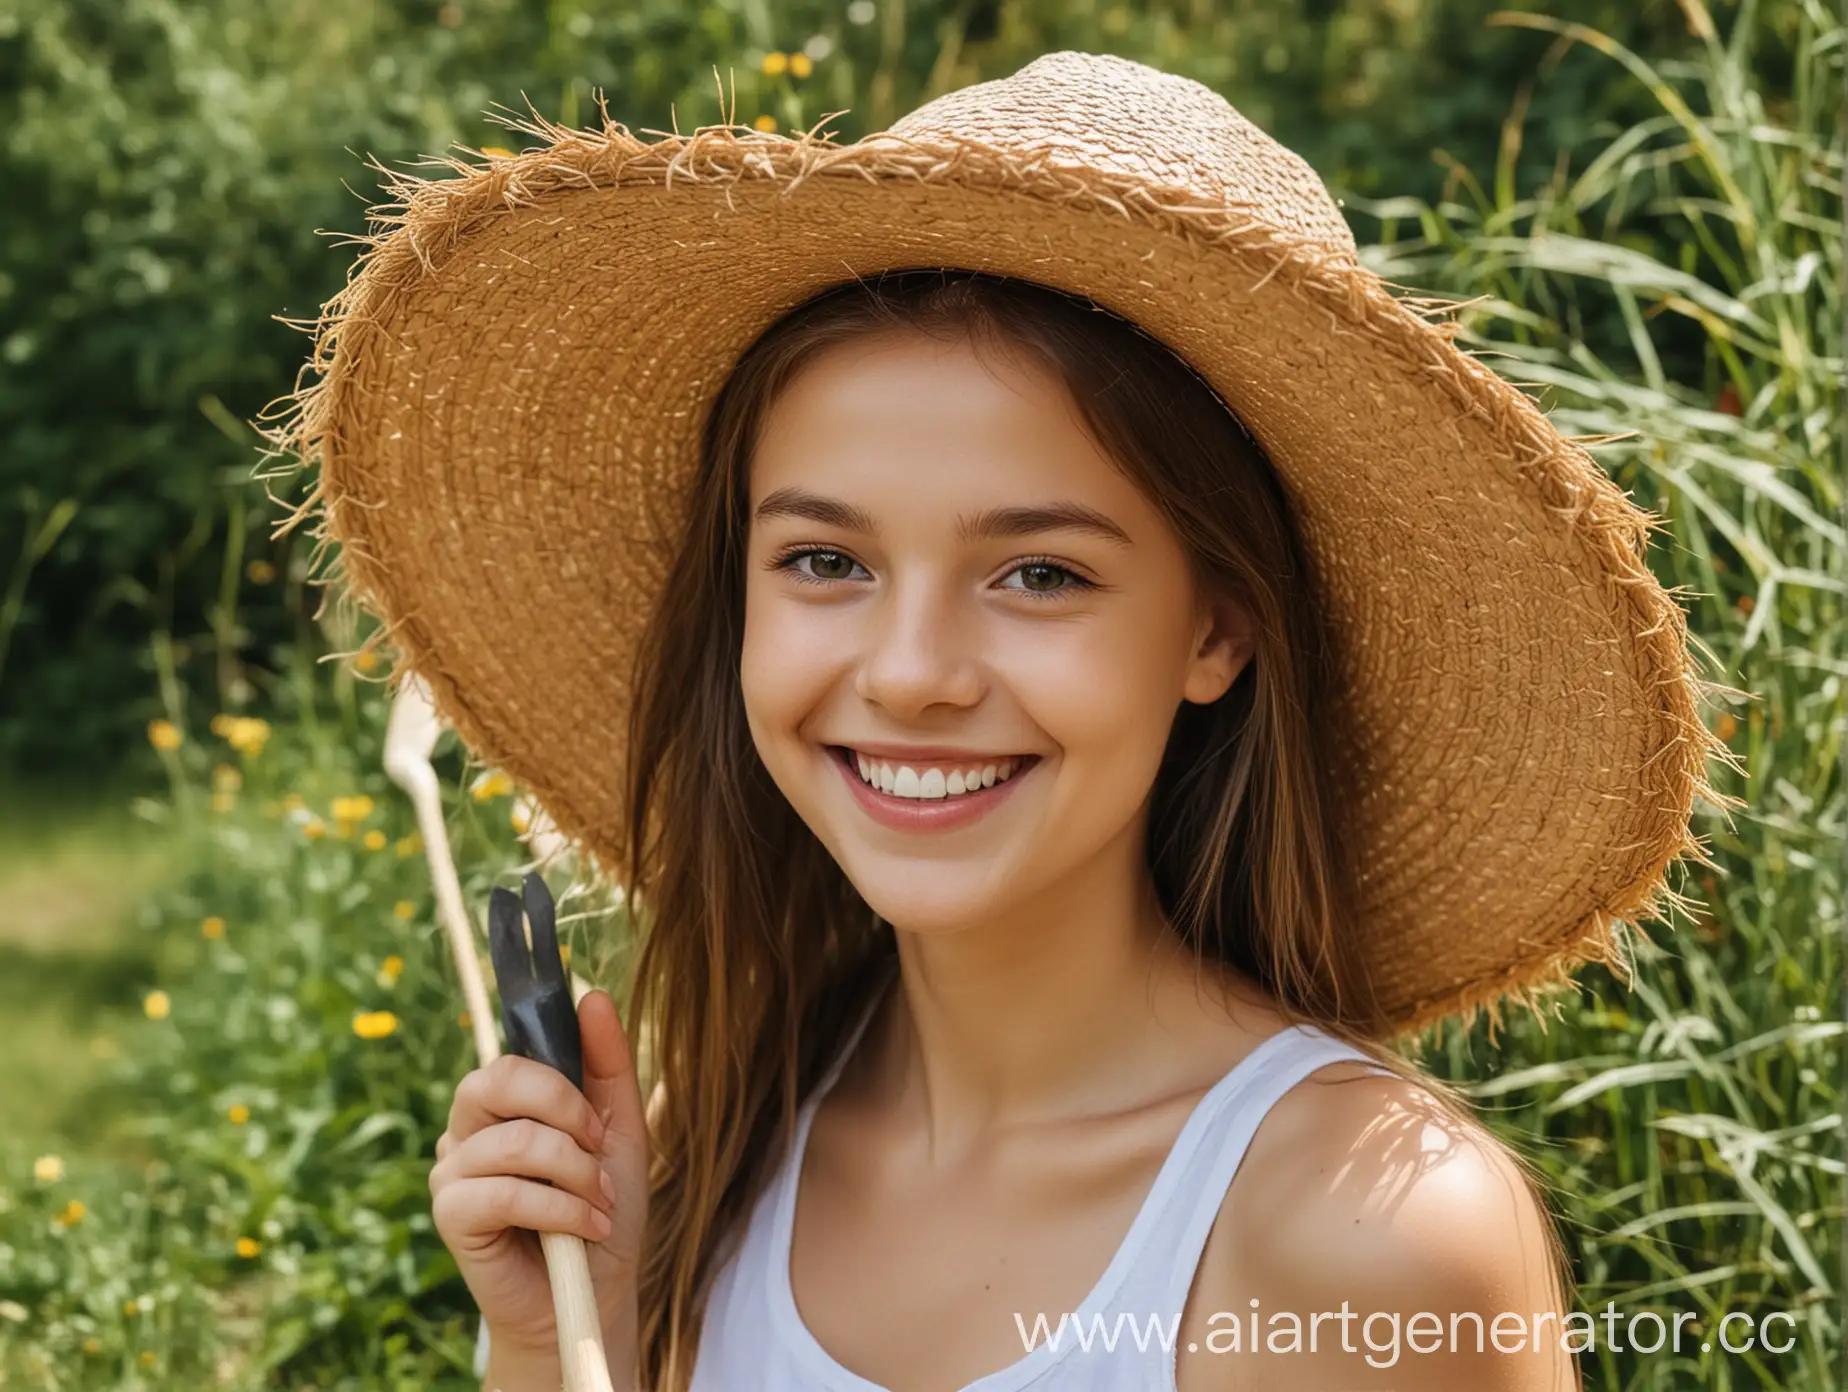 девушка улыбается в соломенной шляпе с садовыми инструментами у лица